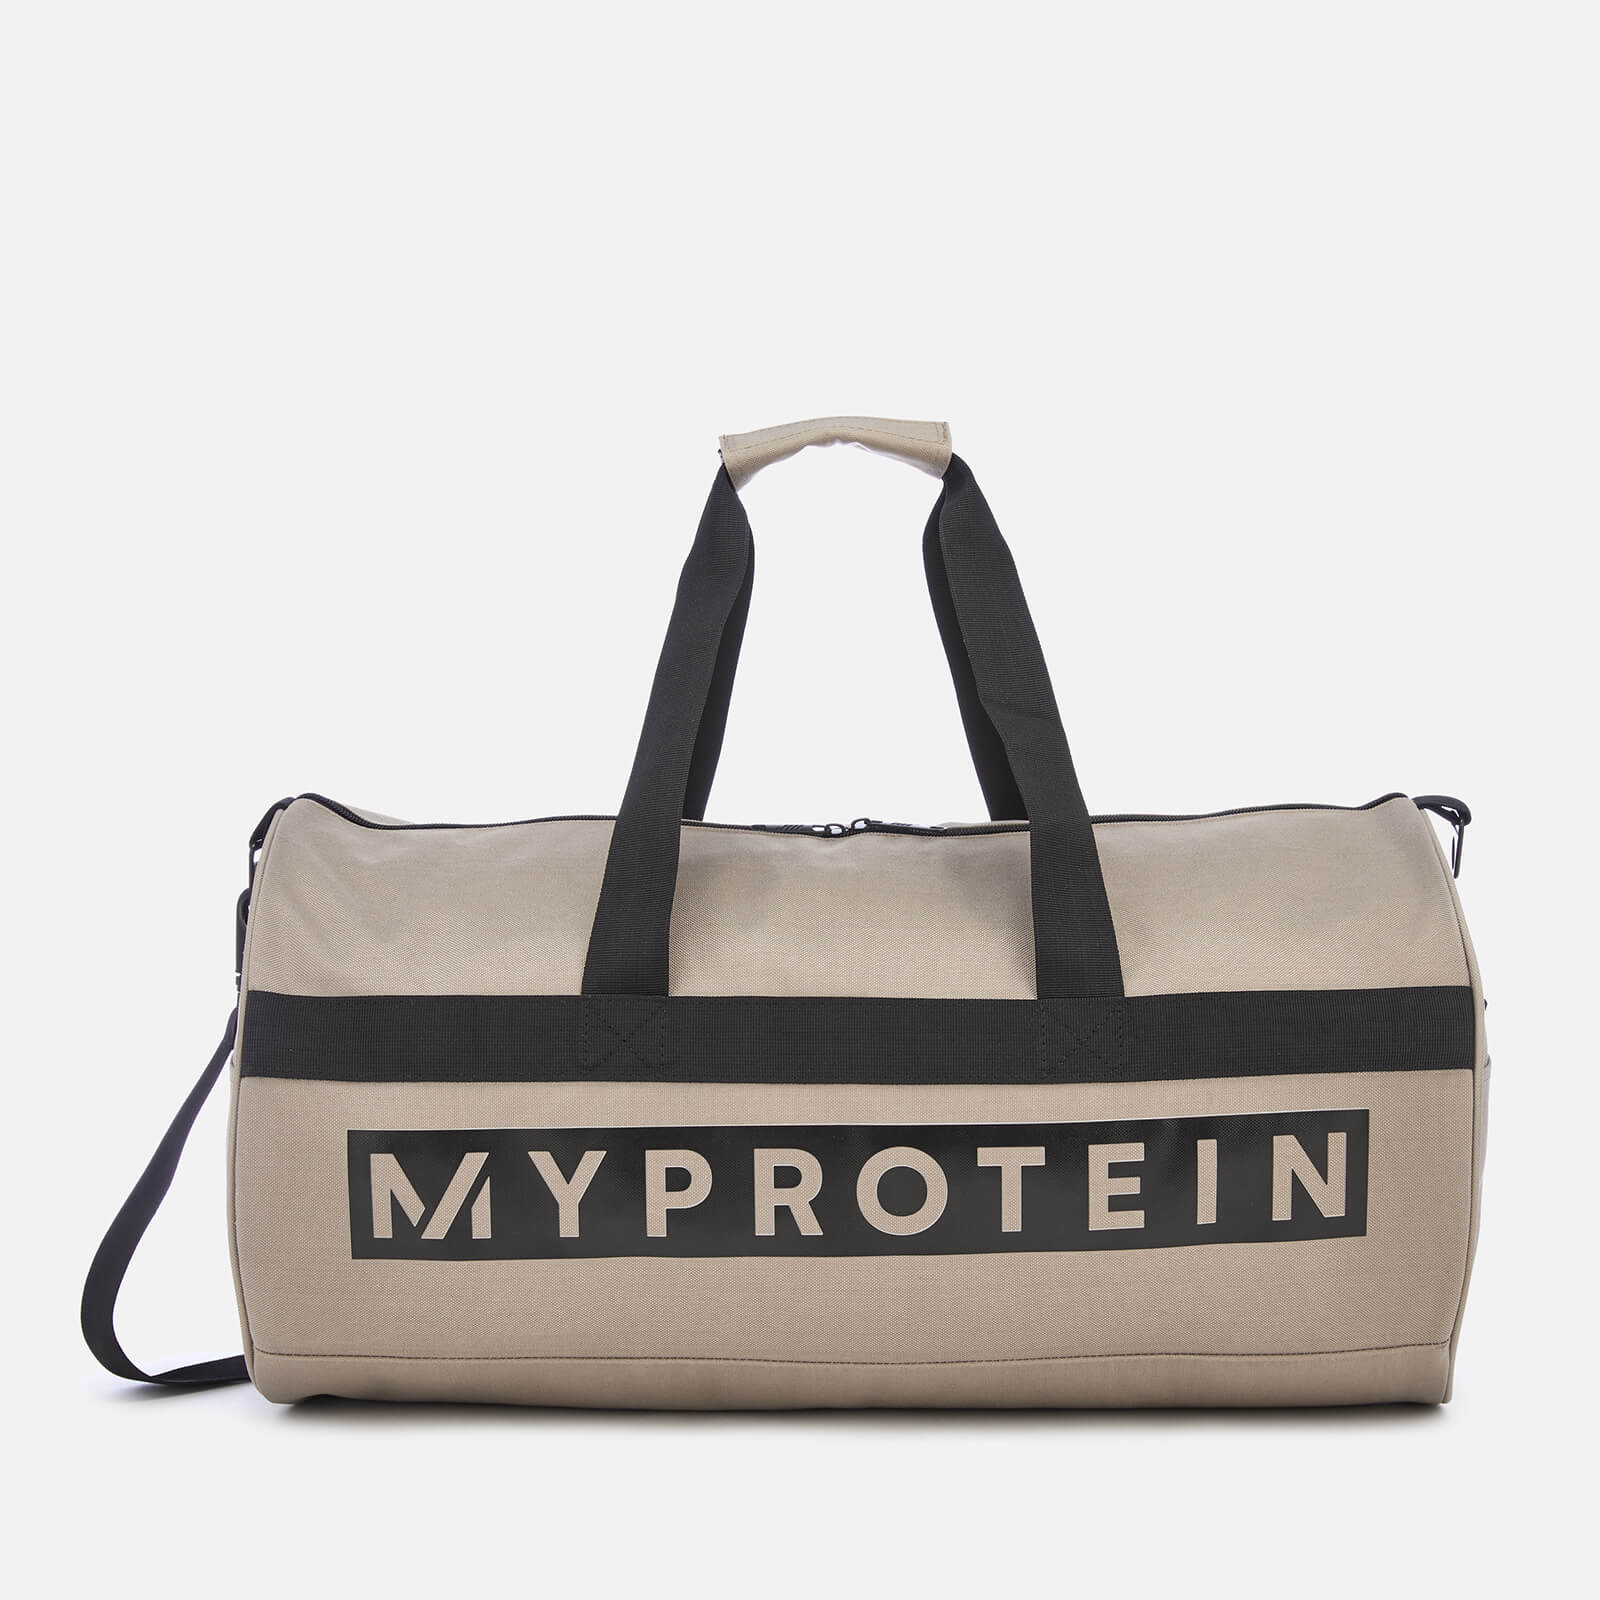 Myprotein 圓筒包 - 卡其